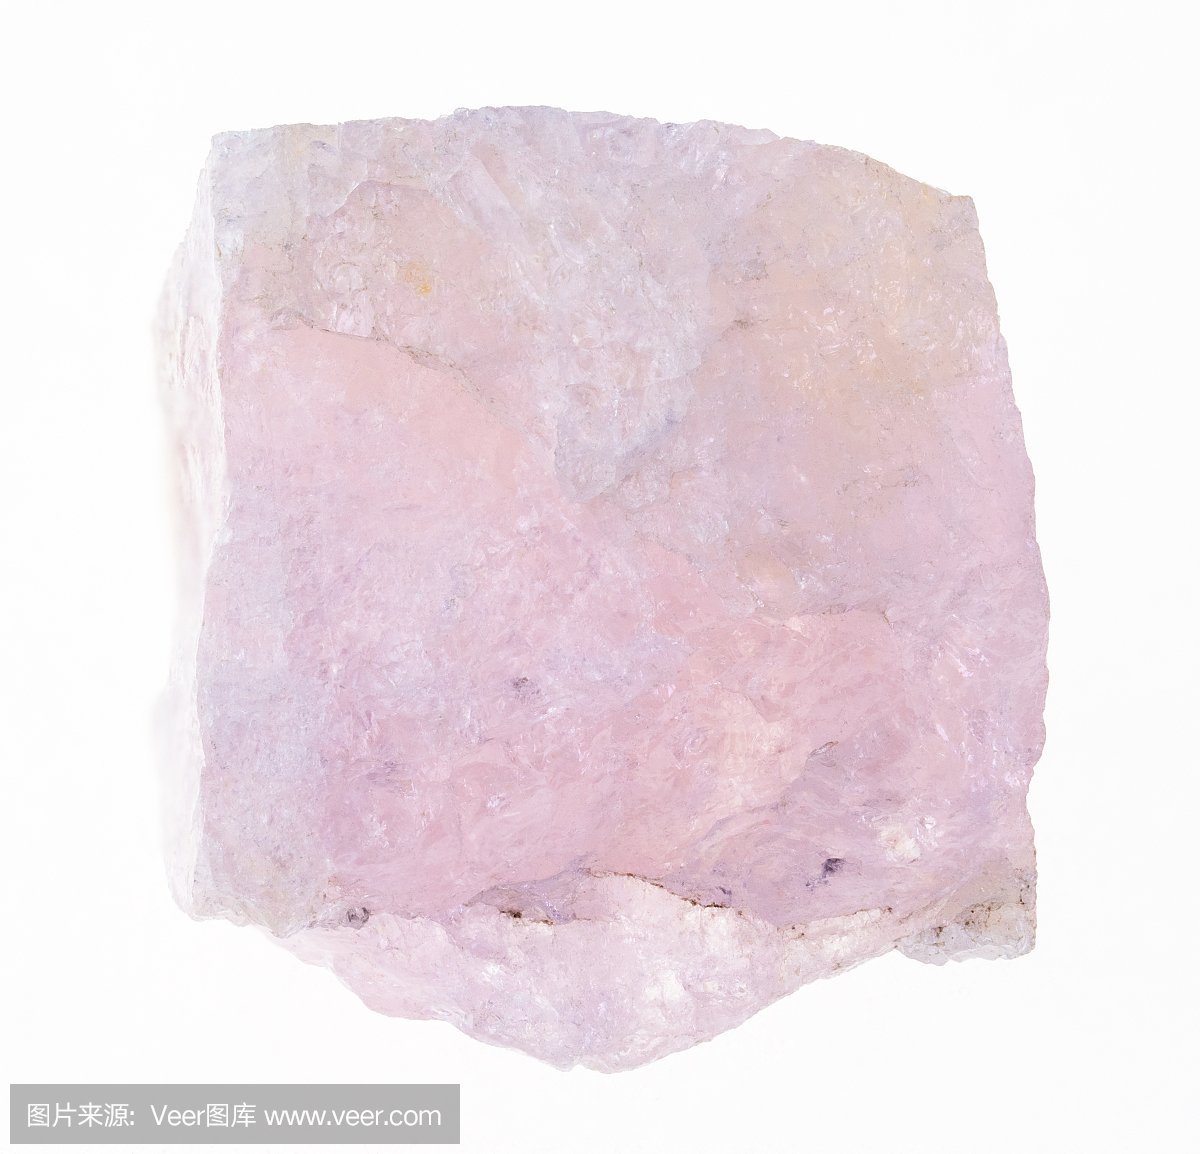 生镁石(伏洛辉石,粉红色绿柱石)石